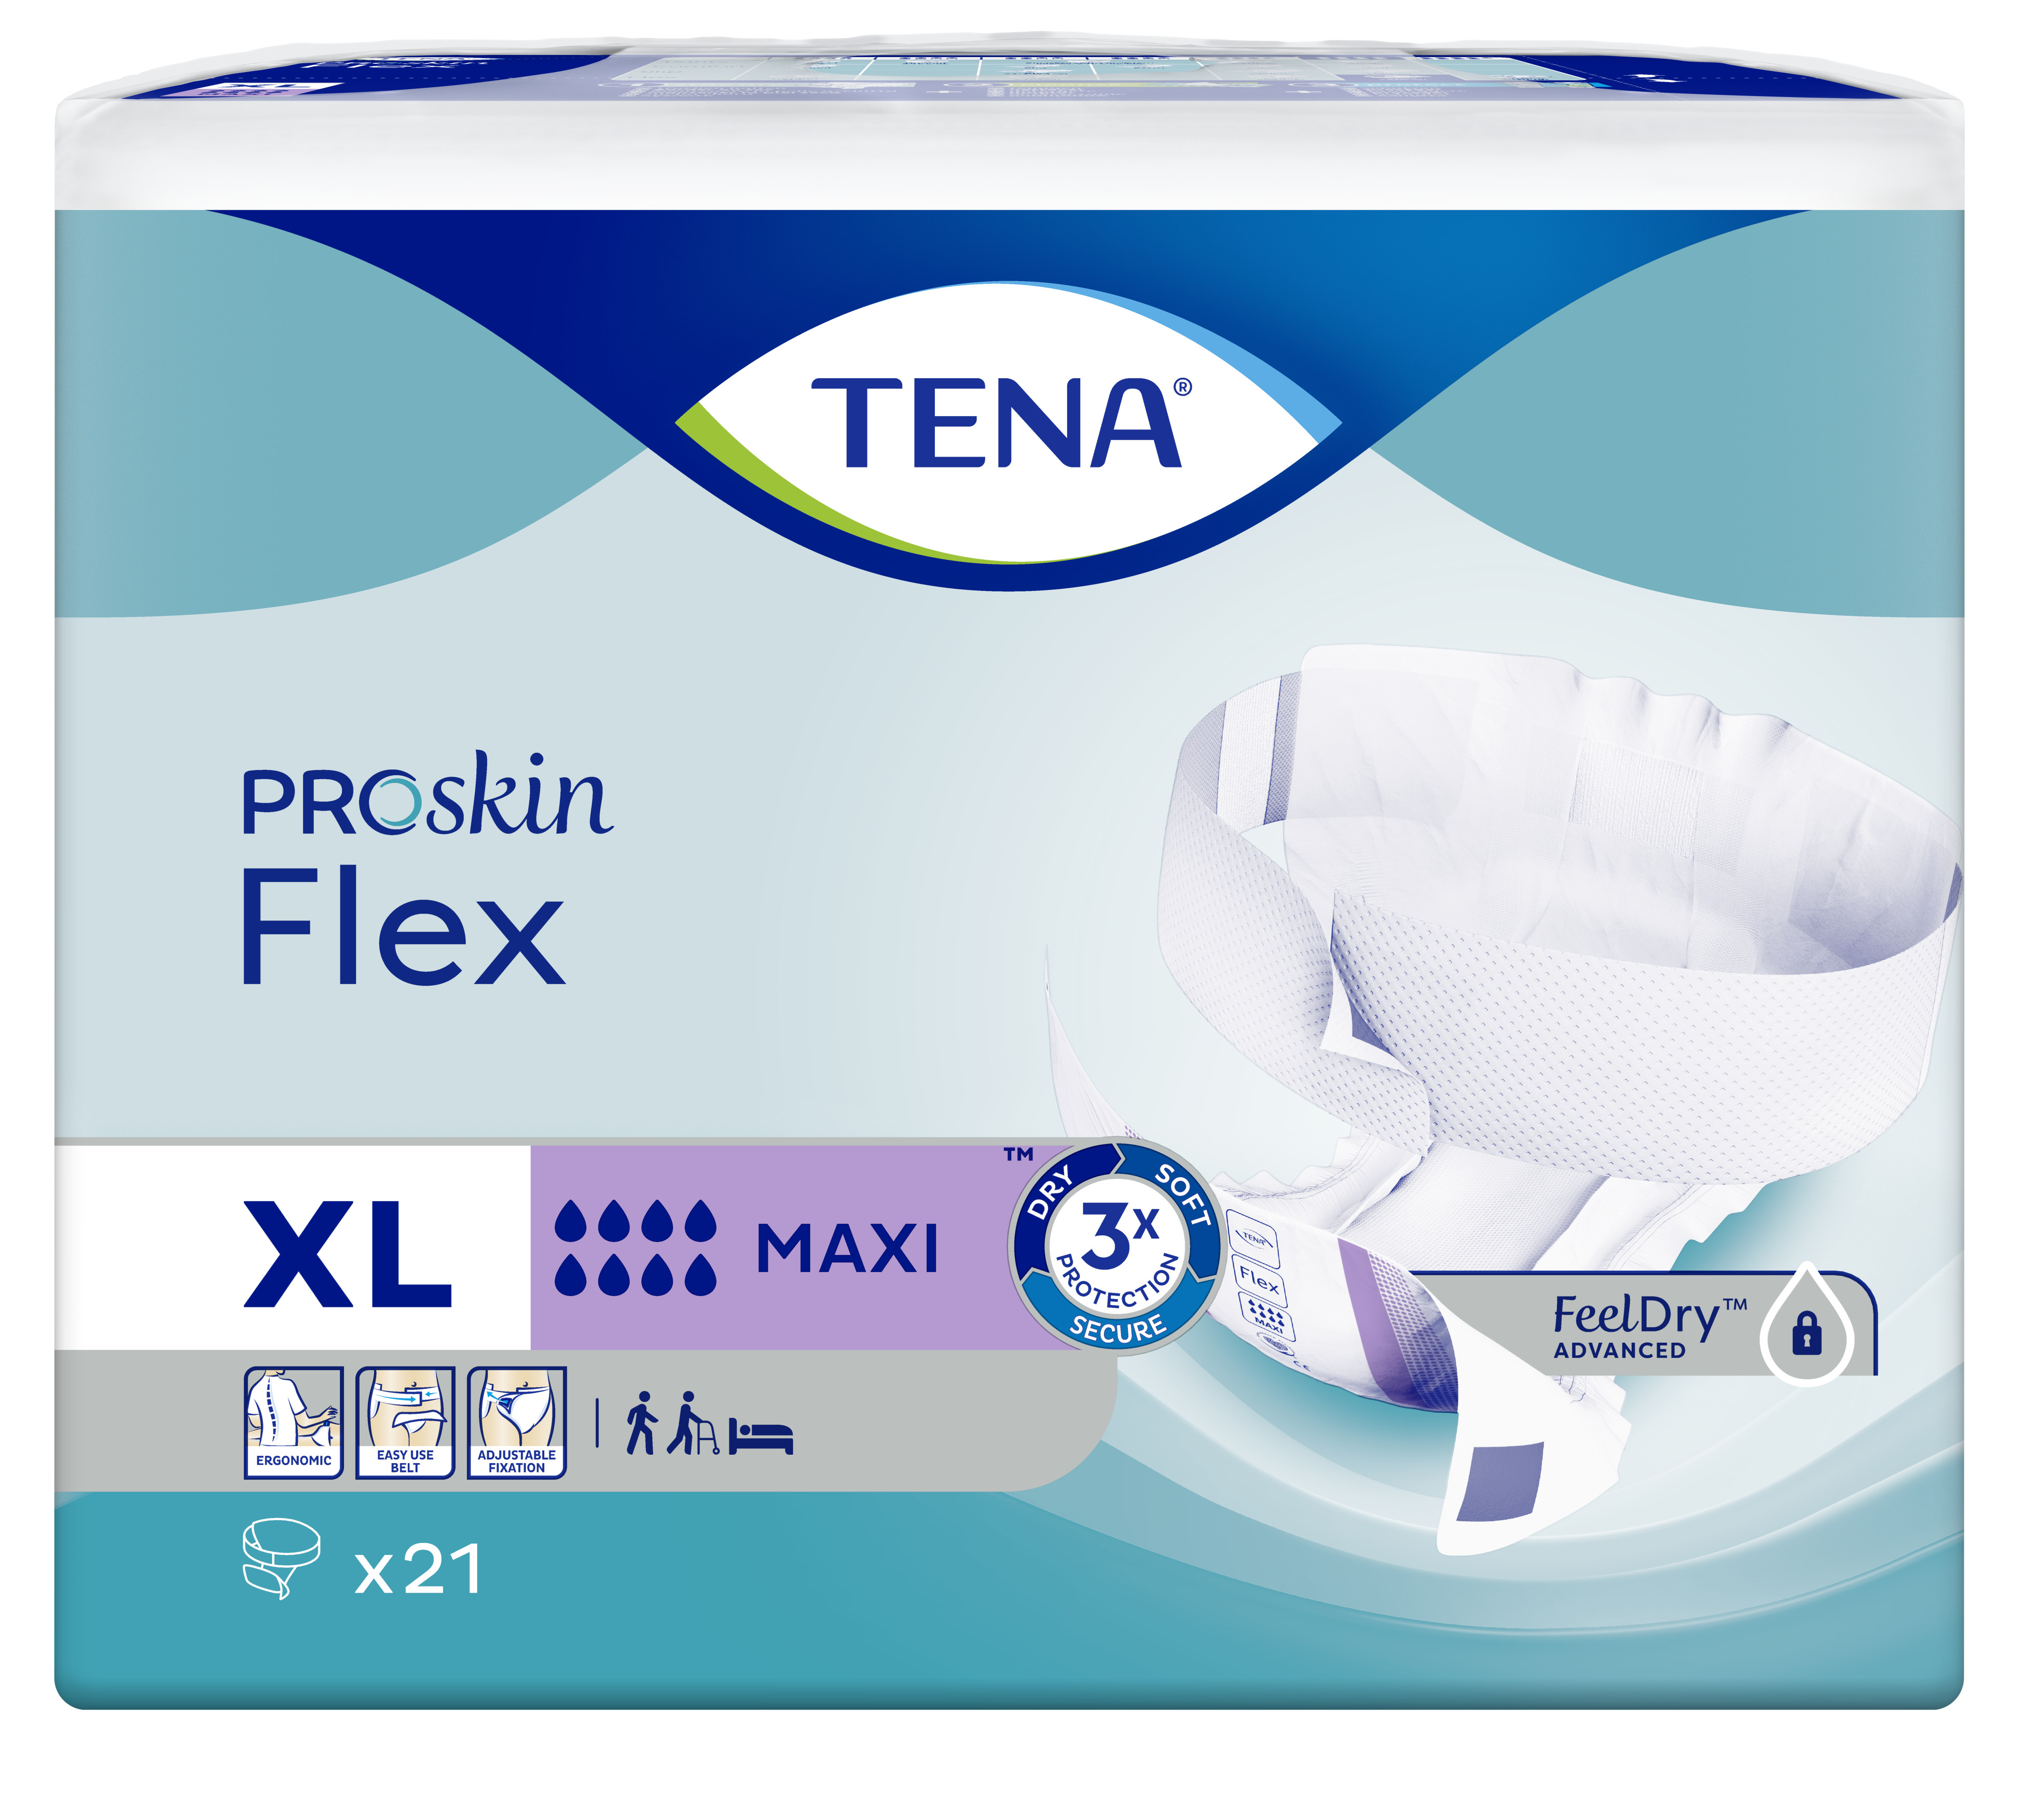 TENA PROskin Flex Maxi Extra Large 21s image 0